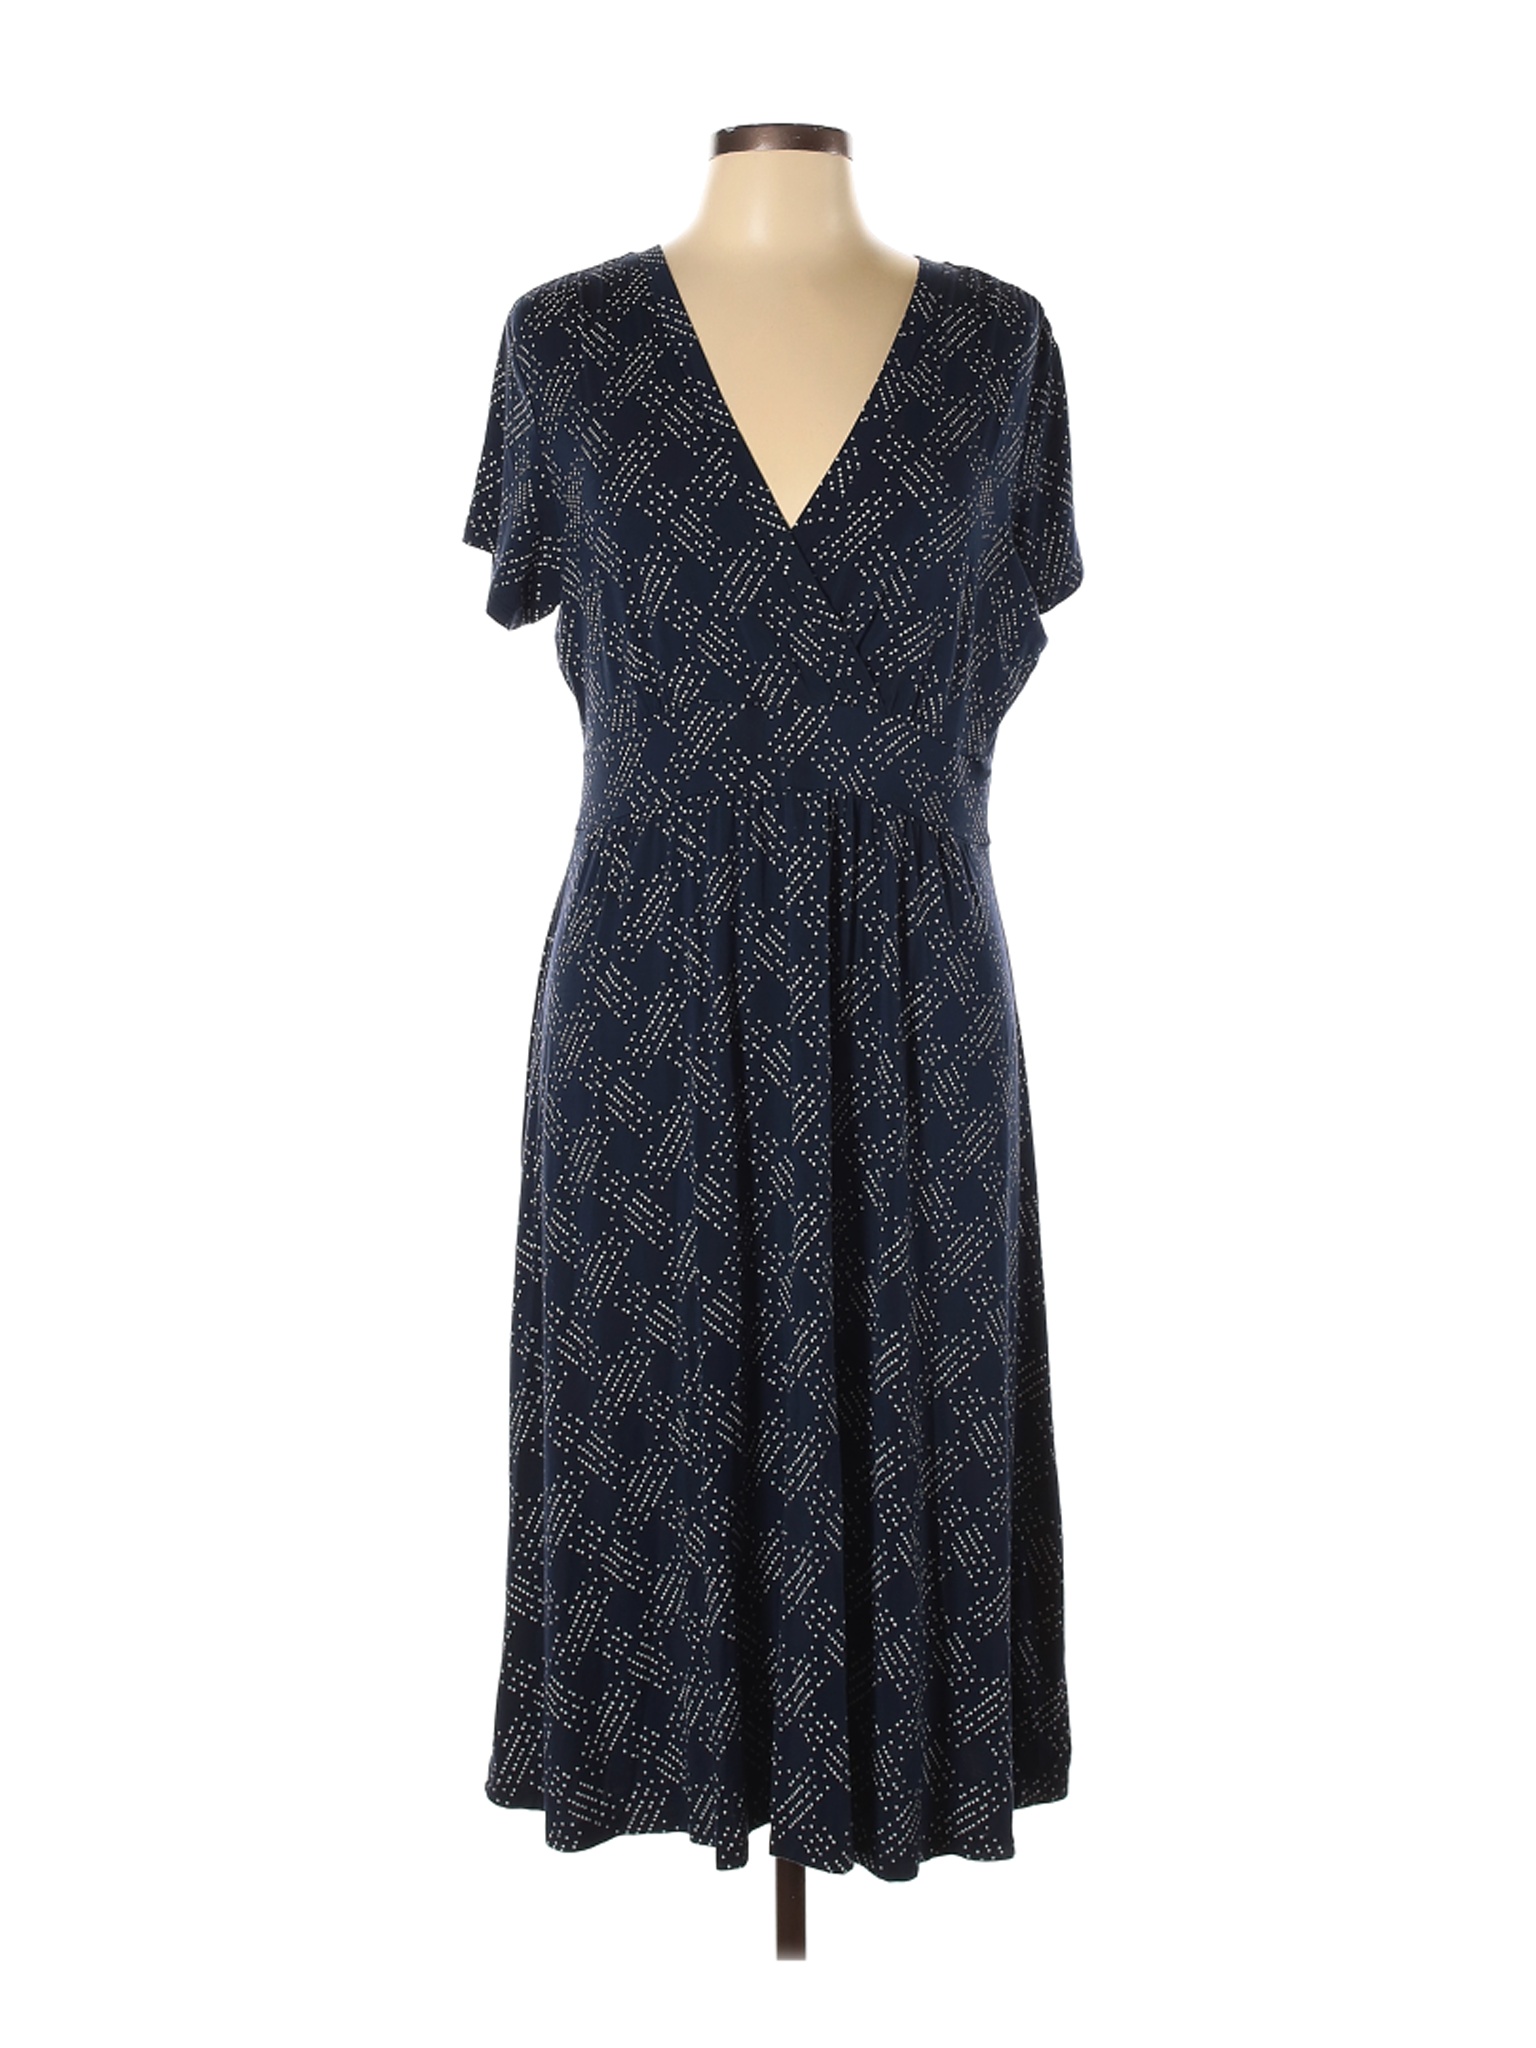 L.L.Bean Women Blue Casual Dress L | eBay